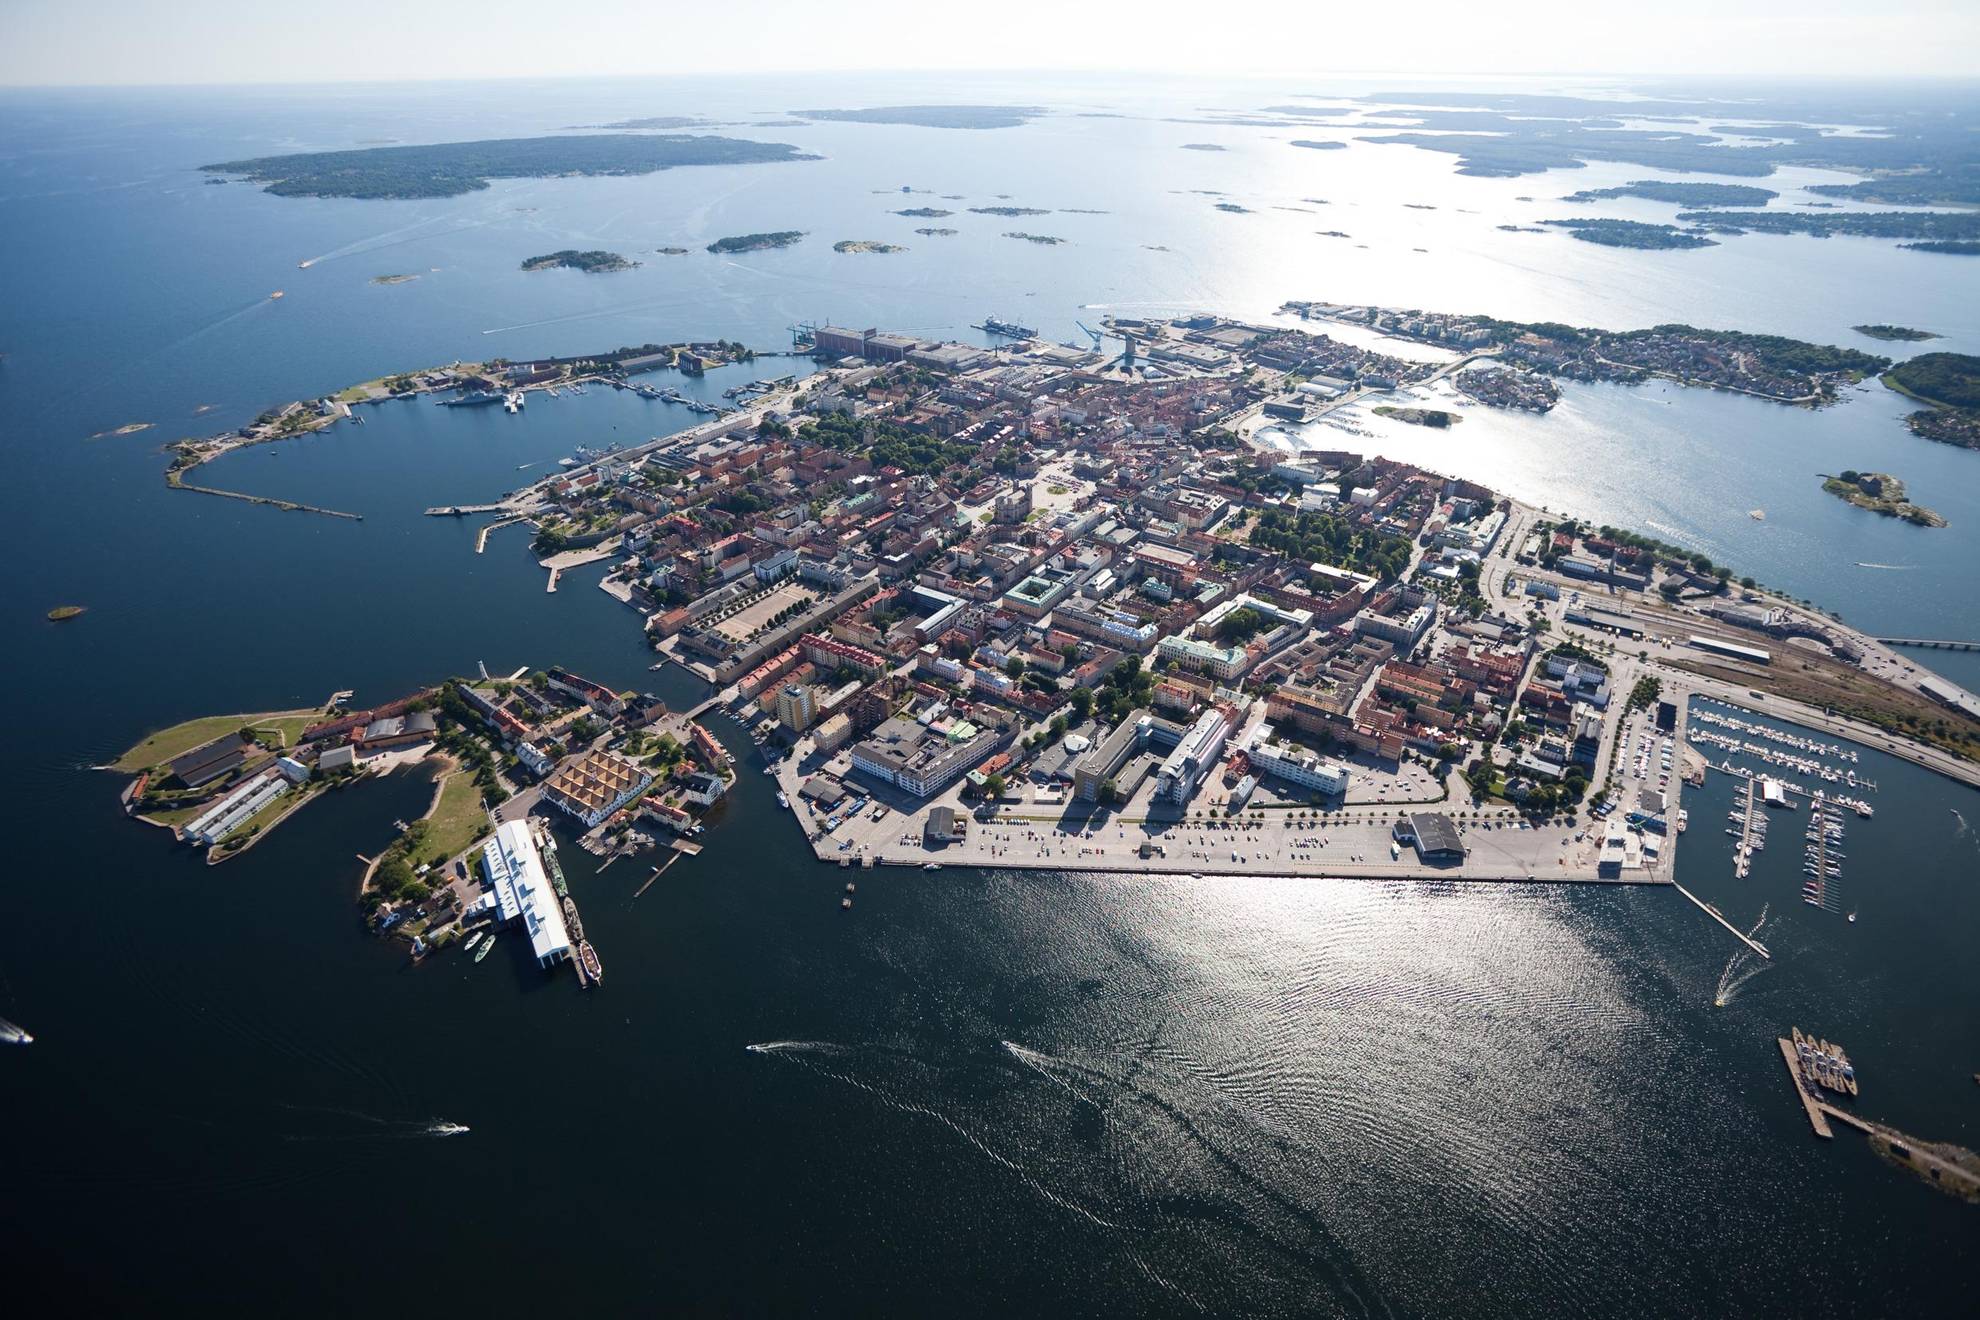 Vue aérienne de l'archipel de Karlskrona